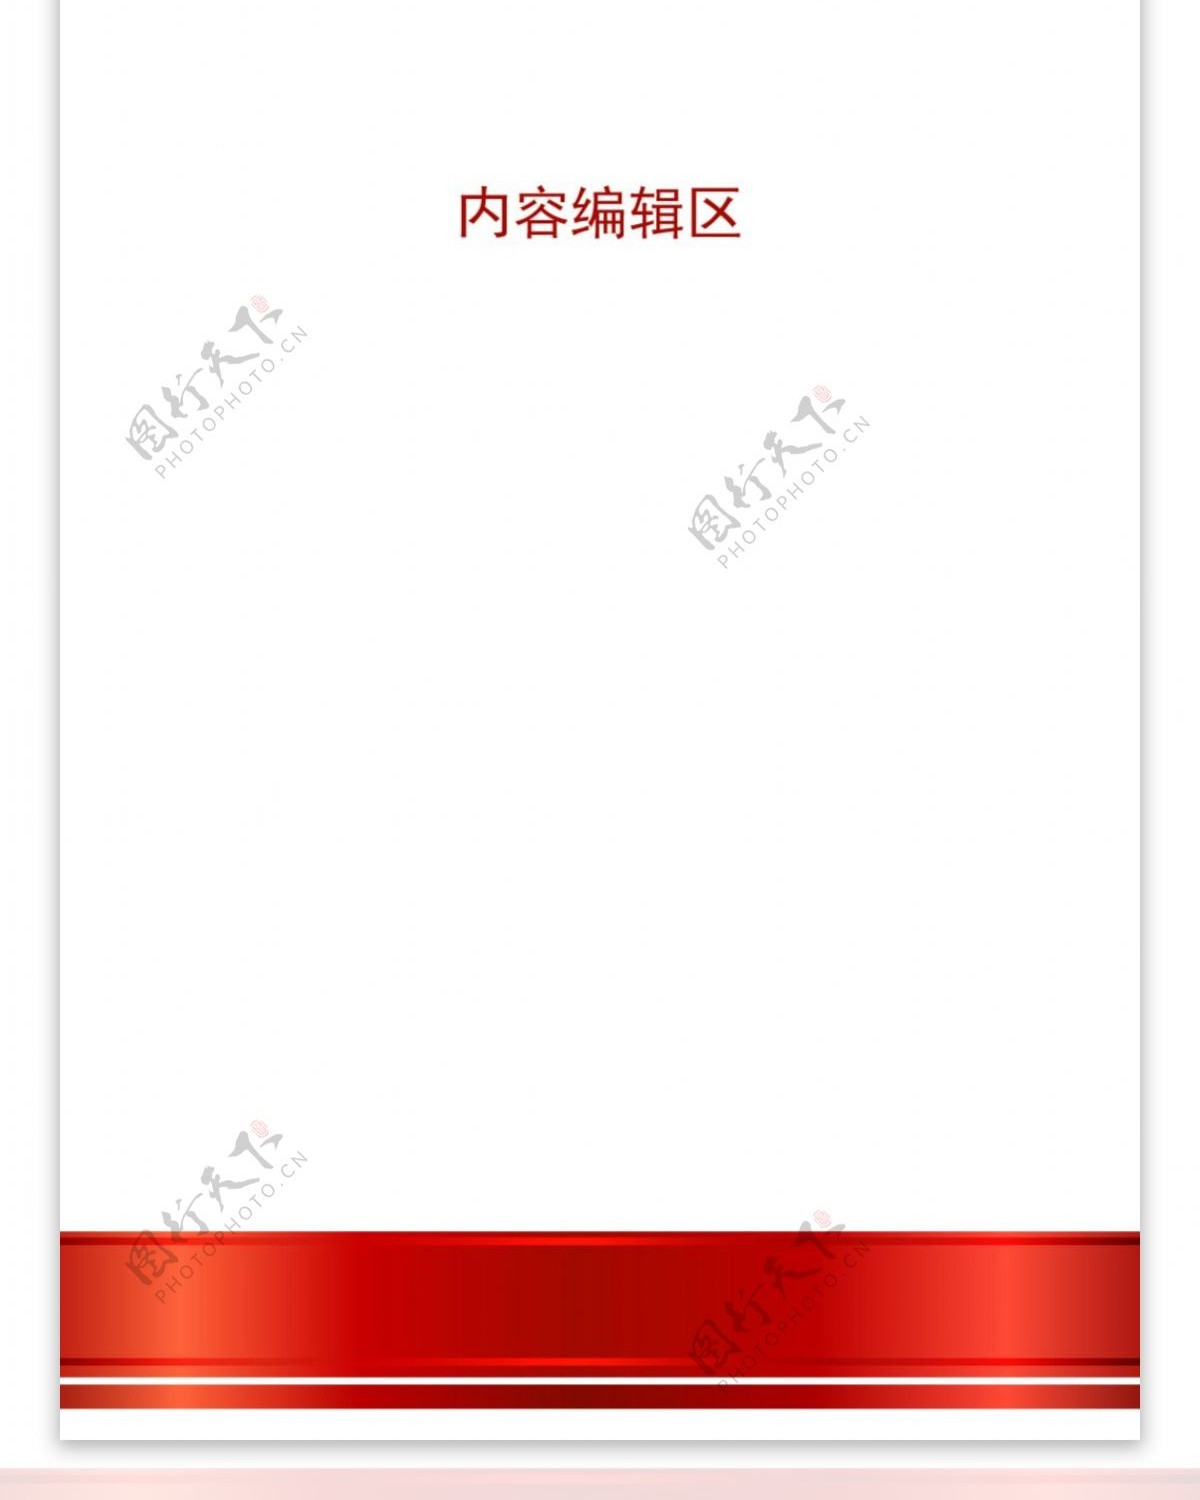 精美红色中国结展架设计模板素材海报画面